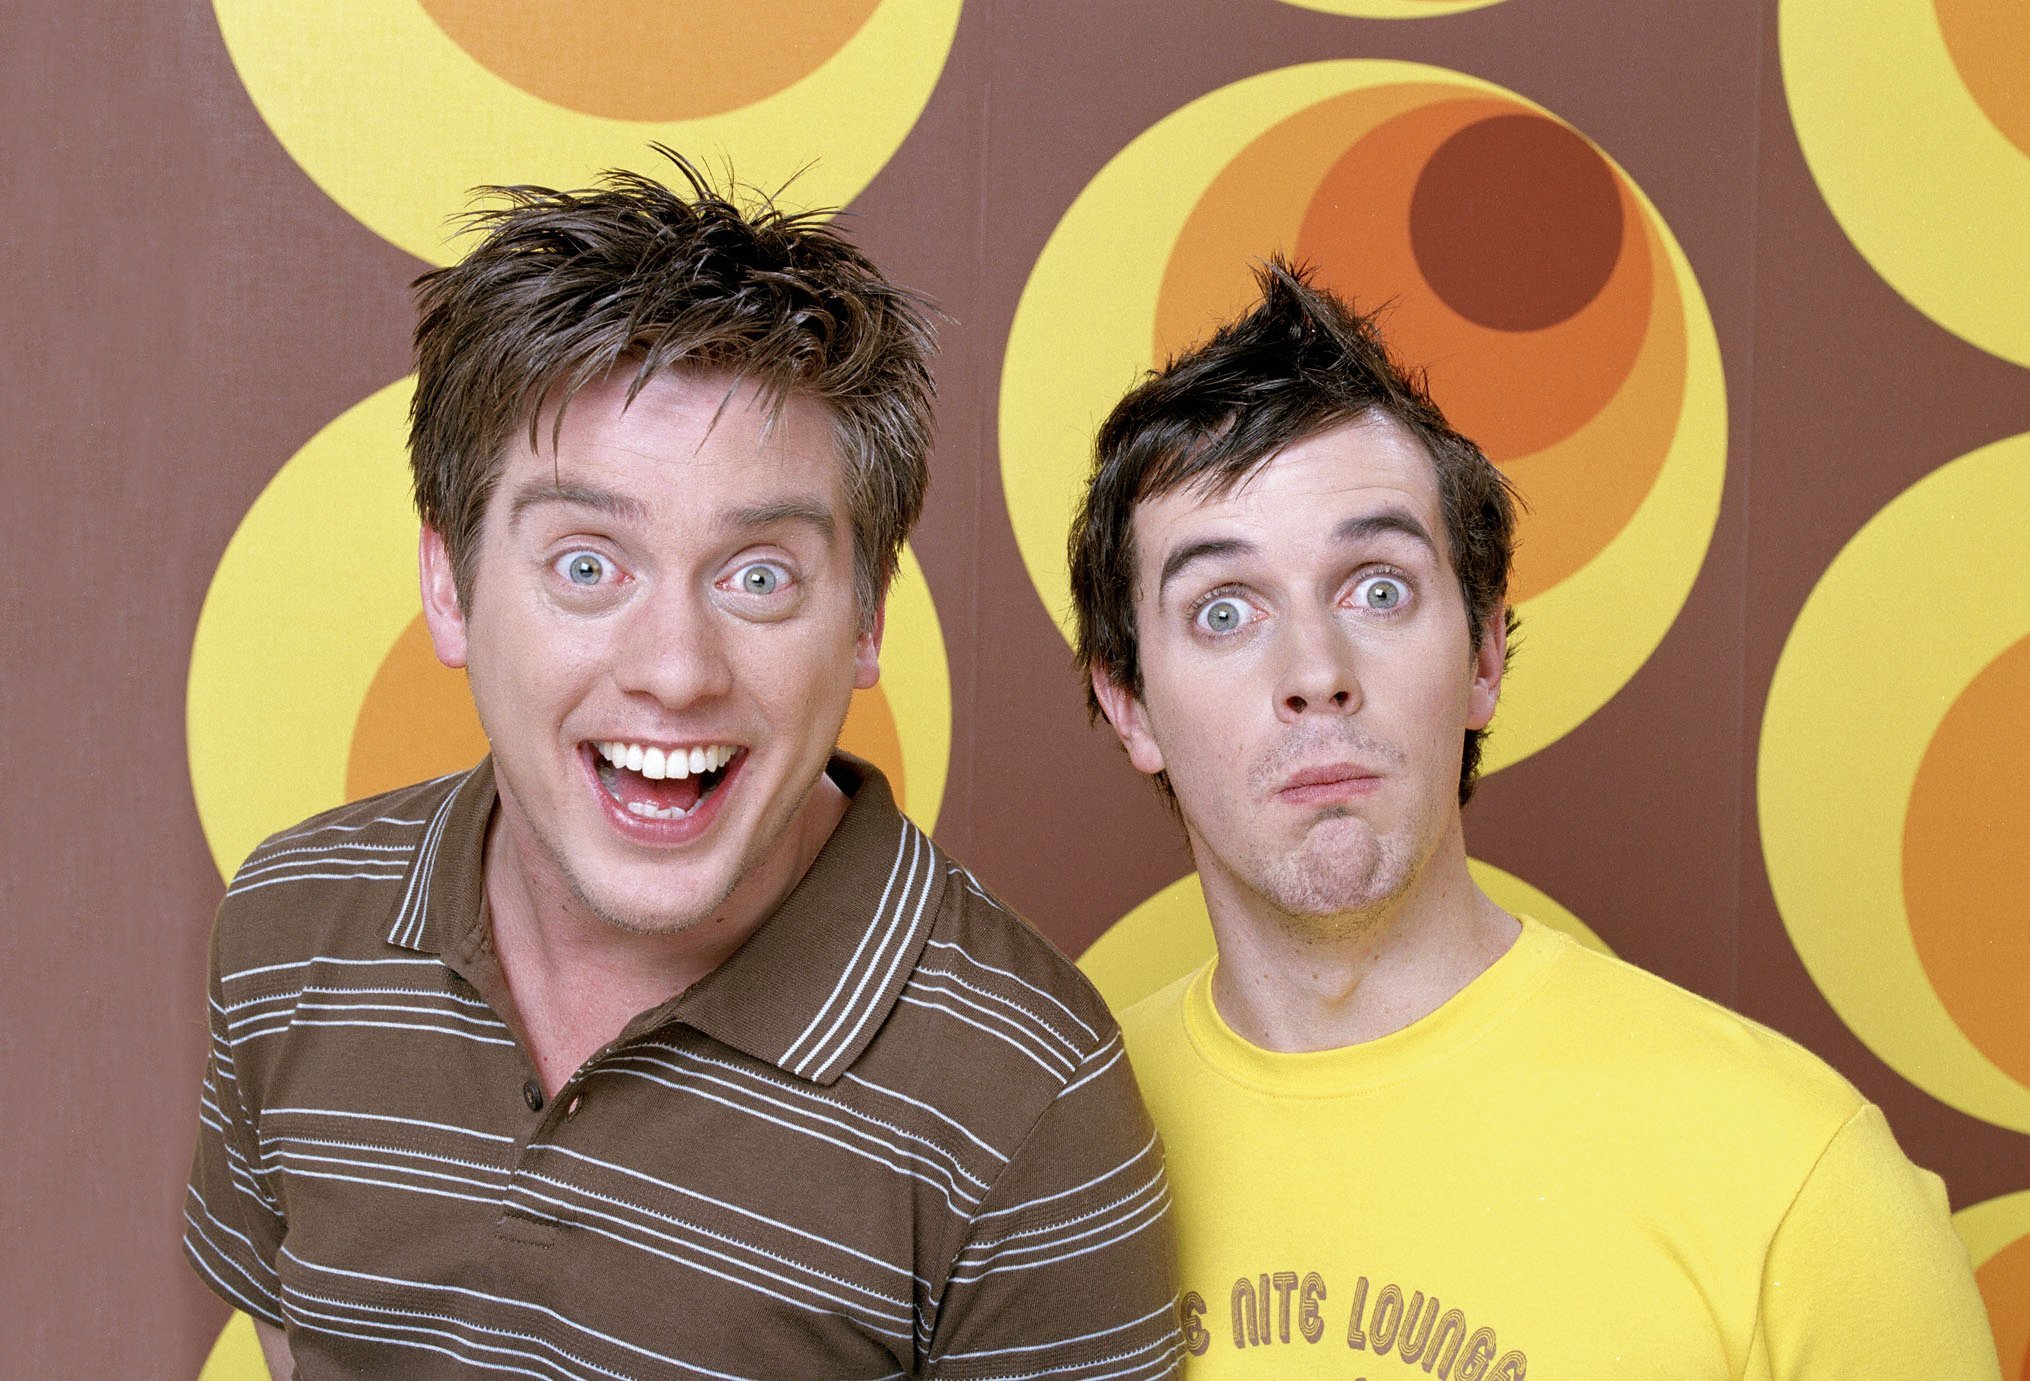 Dom, ganz rechts, wurde zusammen mit seinem Fernsehpartner Dick in der Show „Dick and Dom In Da Bungalow“ berühmt